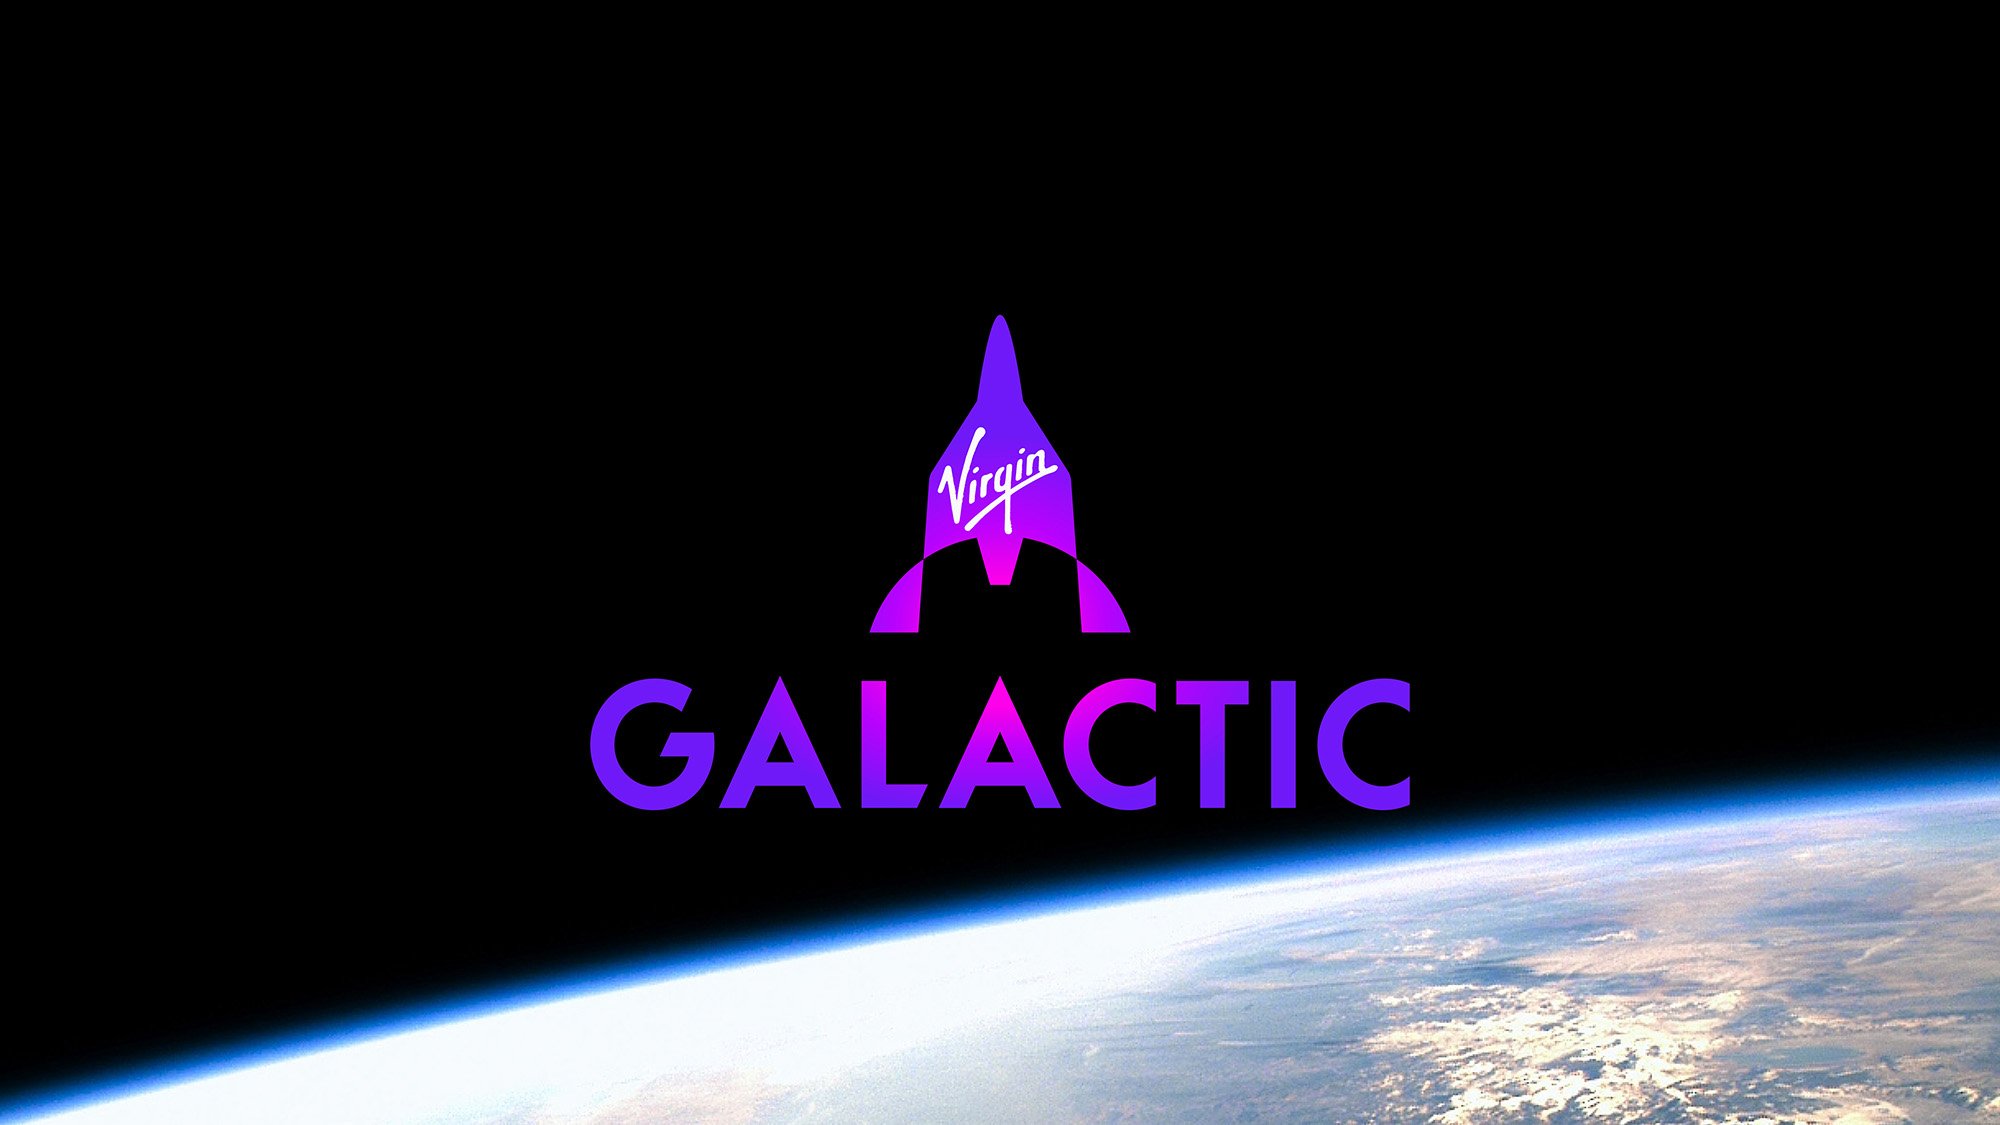 Virgin Galactic đang tìm kiếm 1.000 người mua vé bay vũ trụ trị giá 450.000 đô la của hãng